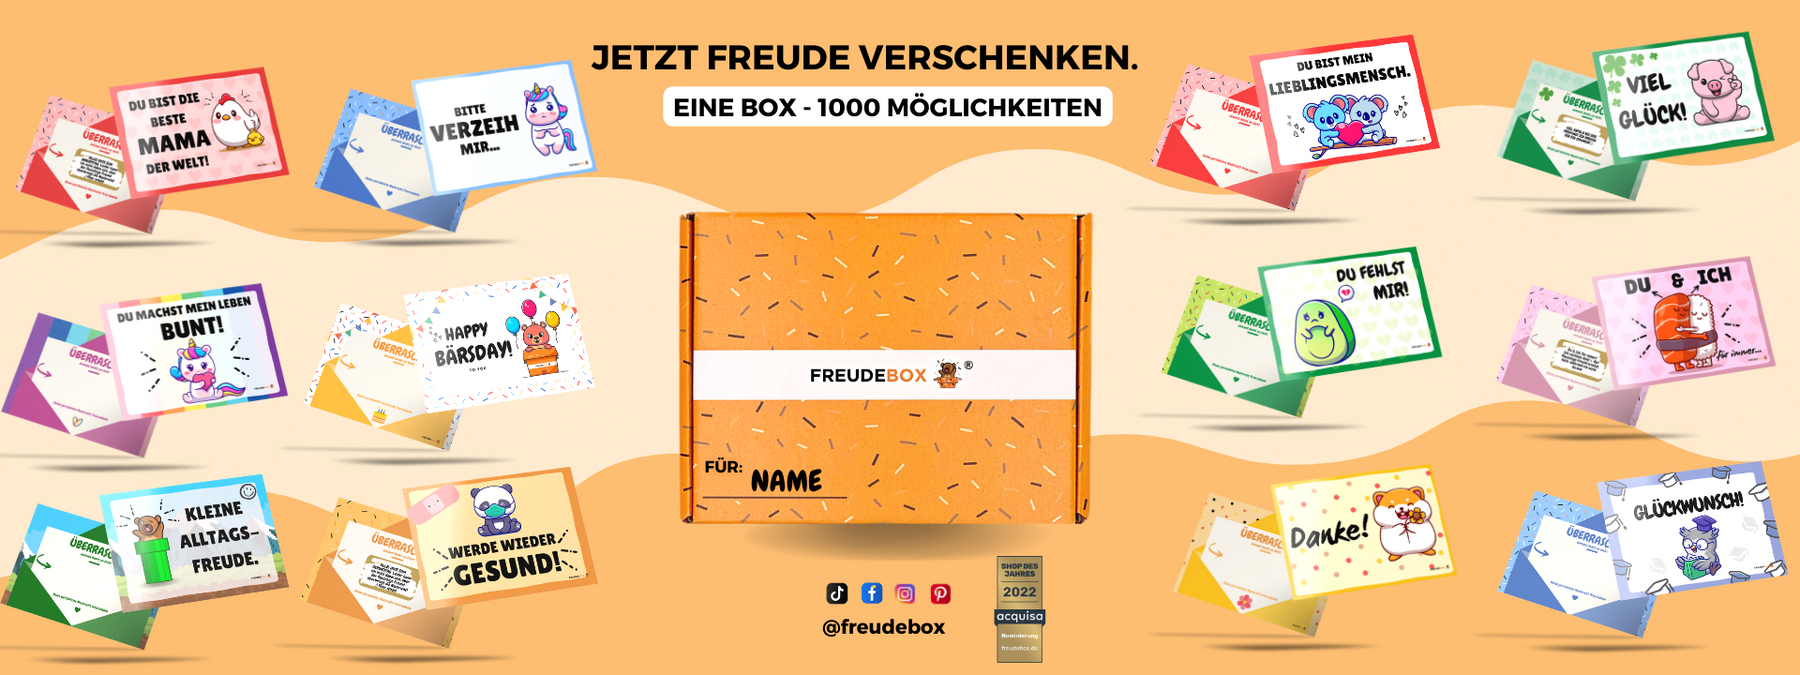 freudebox-orange-freude-verschenken-karten